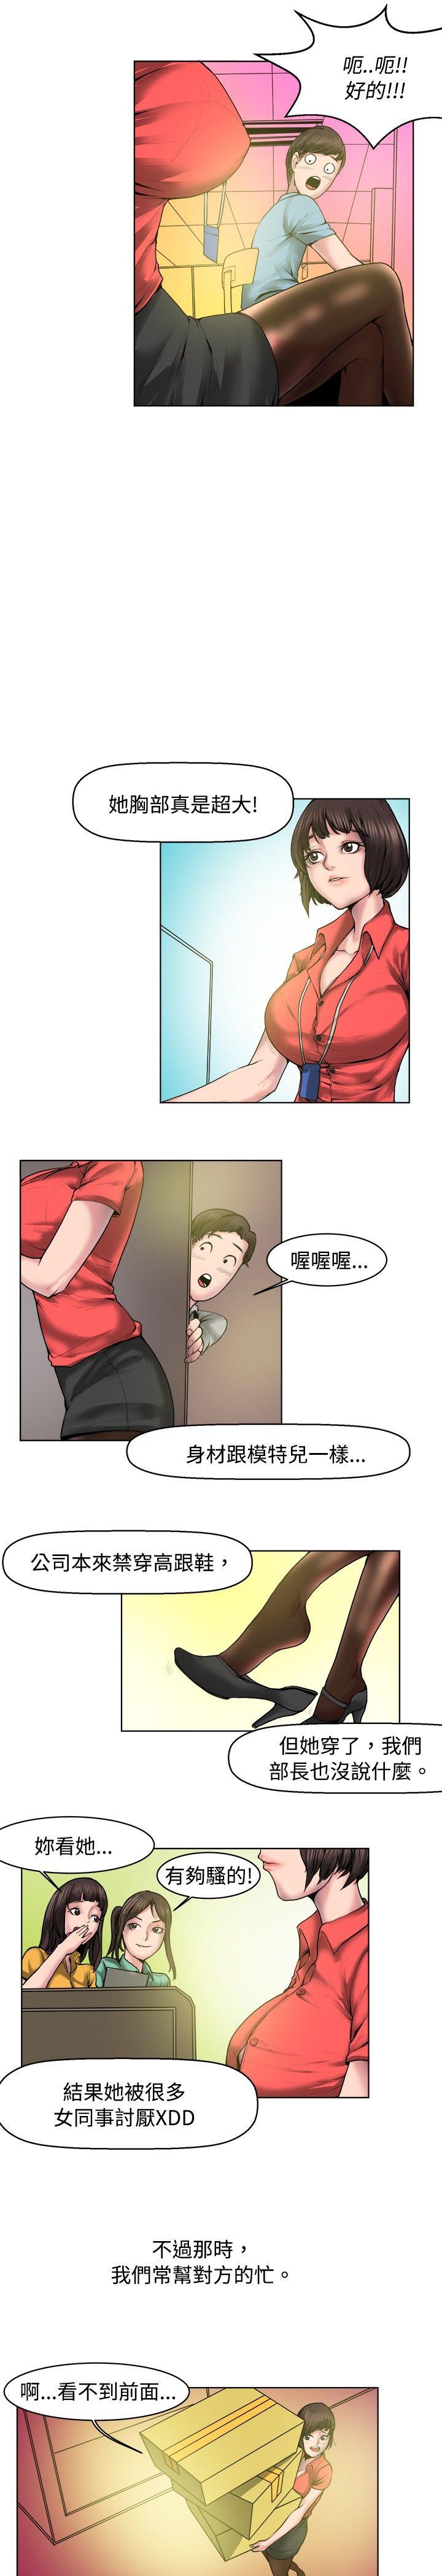 秘密Story  女同事的不伦恋(上) 漫画图片3.jpg